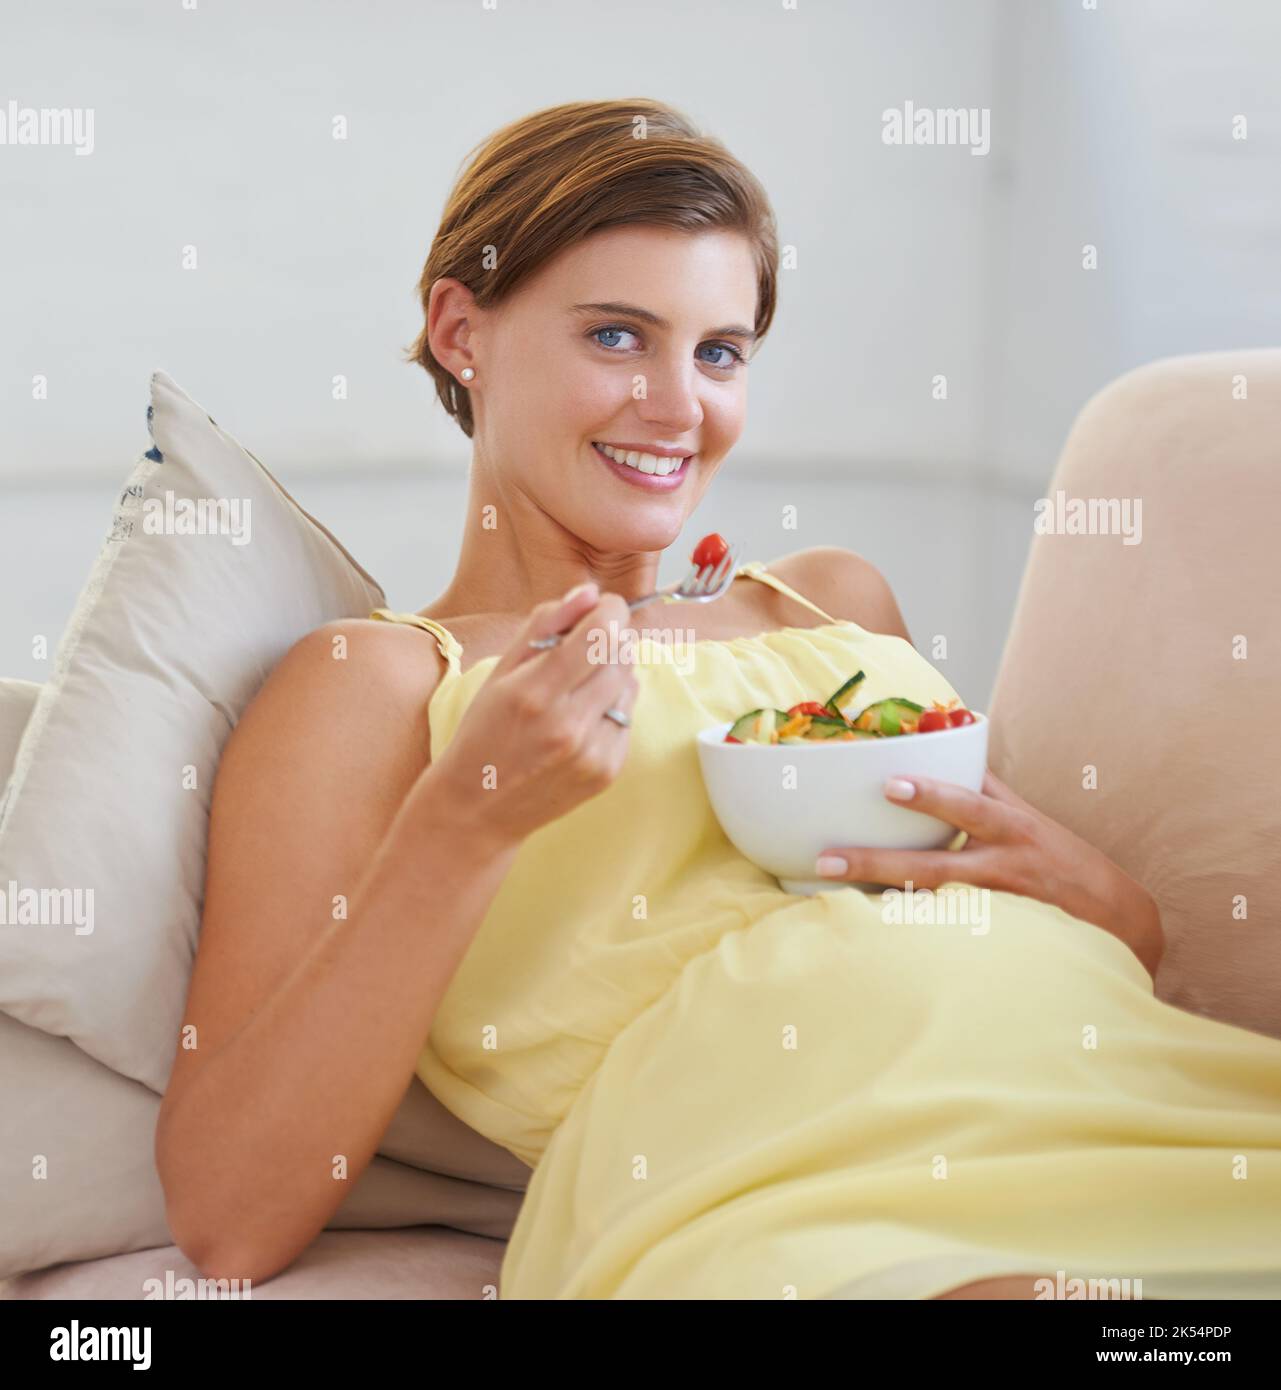 Mon bébé aime la salade autant que moi. Une belle femme enceinte se détendant sur le canapé tout en mangeant une salade fraîche. Banque D'Images